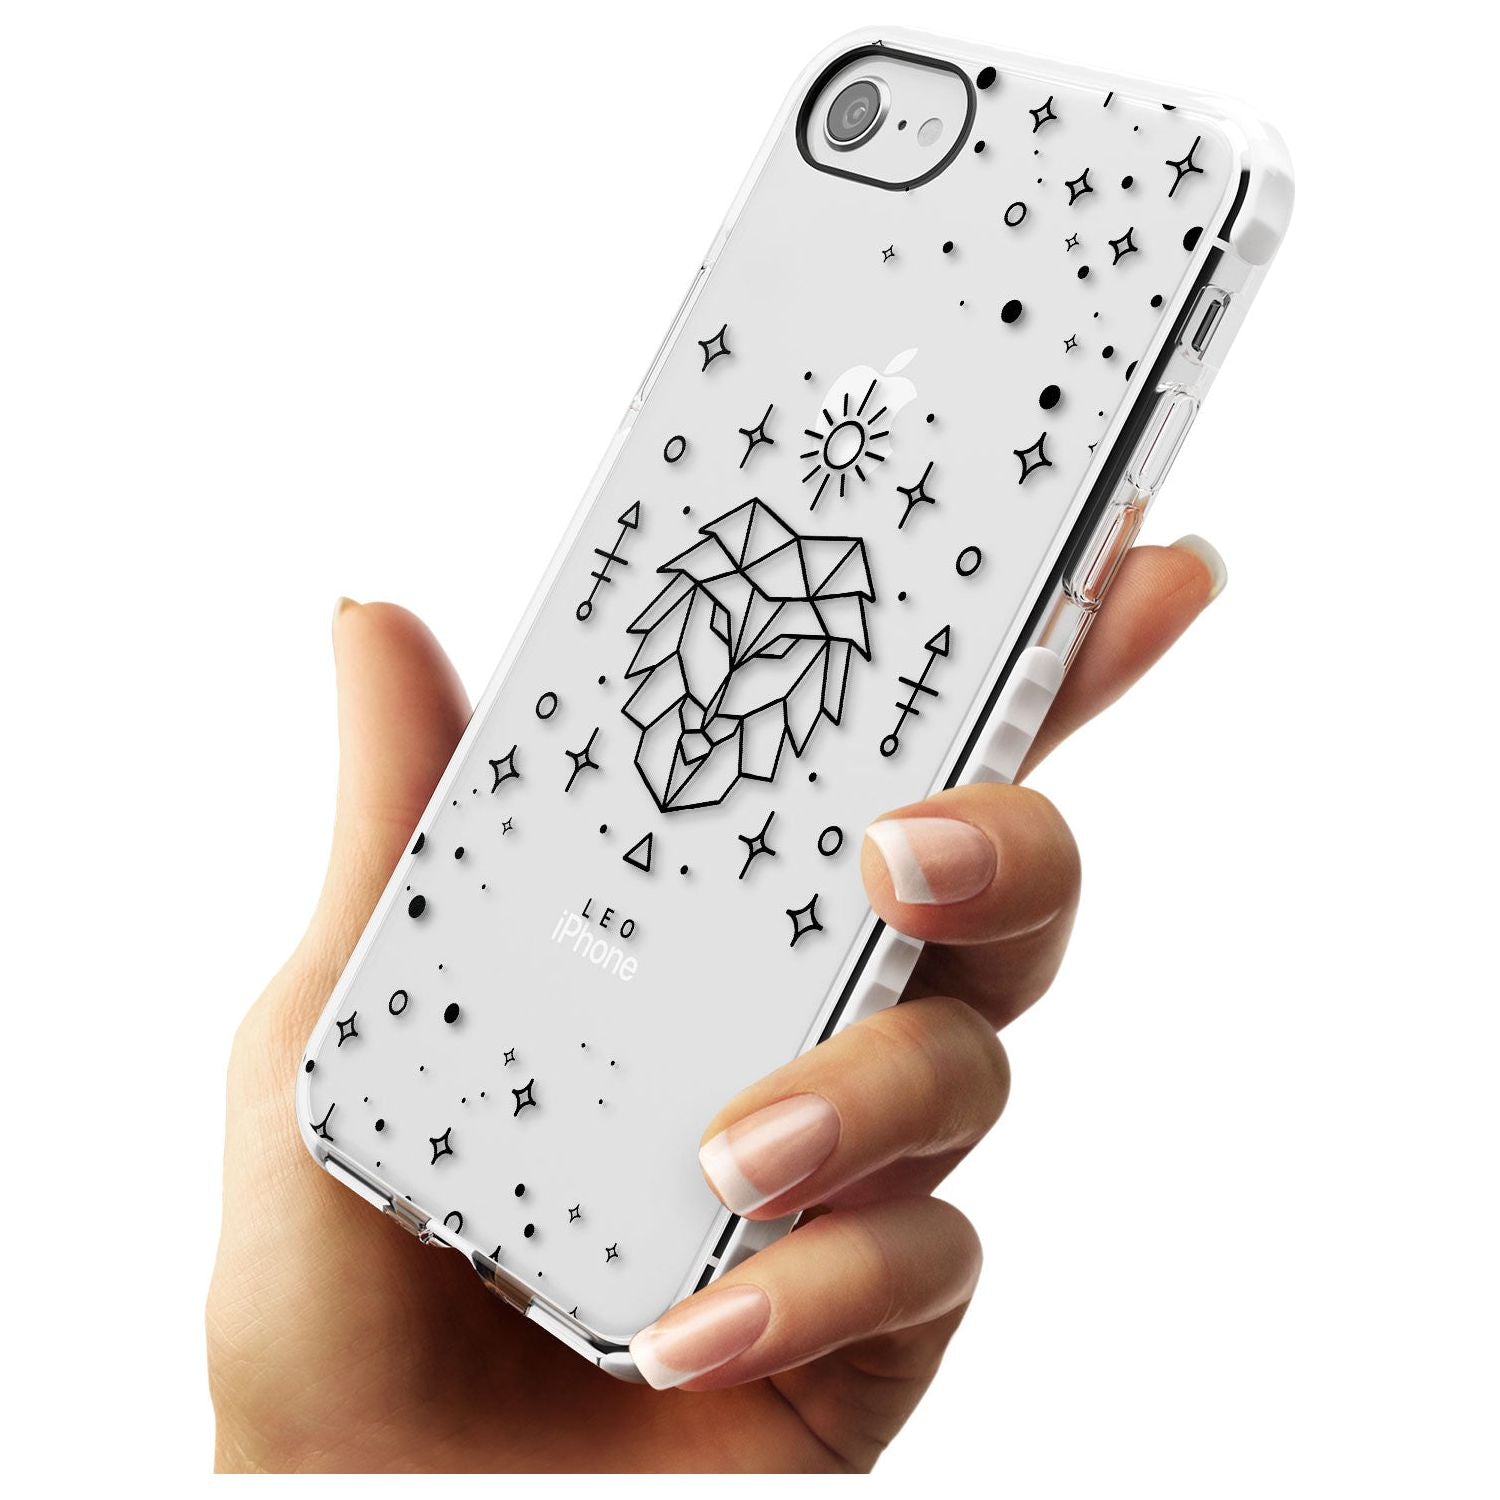 Leo Emblem - Transparent Design Impact Phone Case for iPhone SE 8 7 Plus